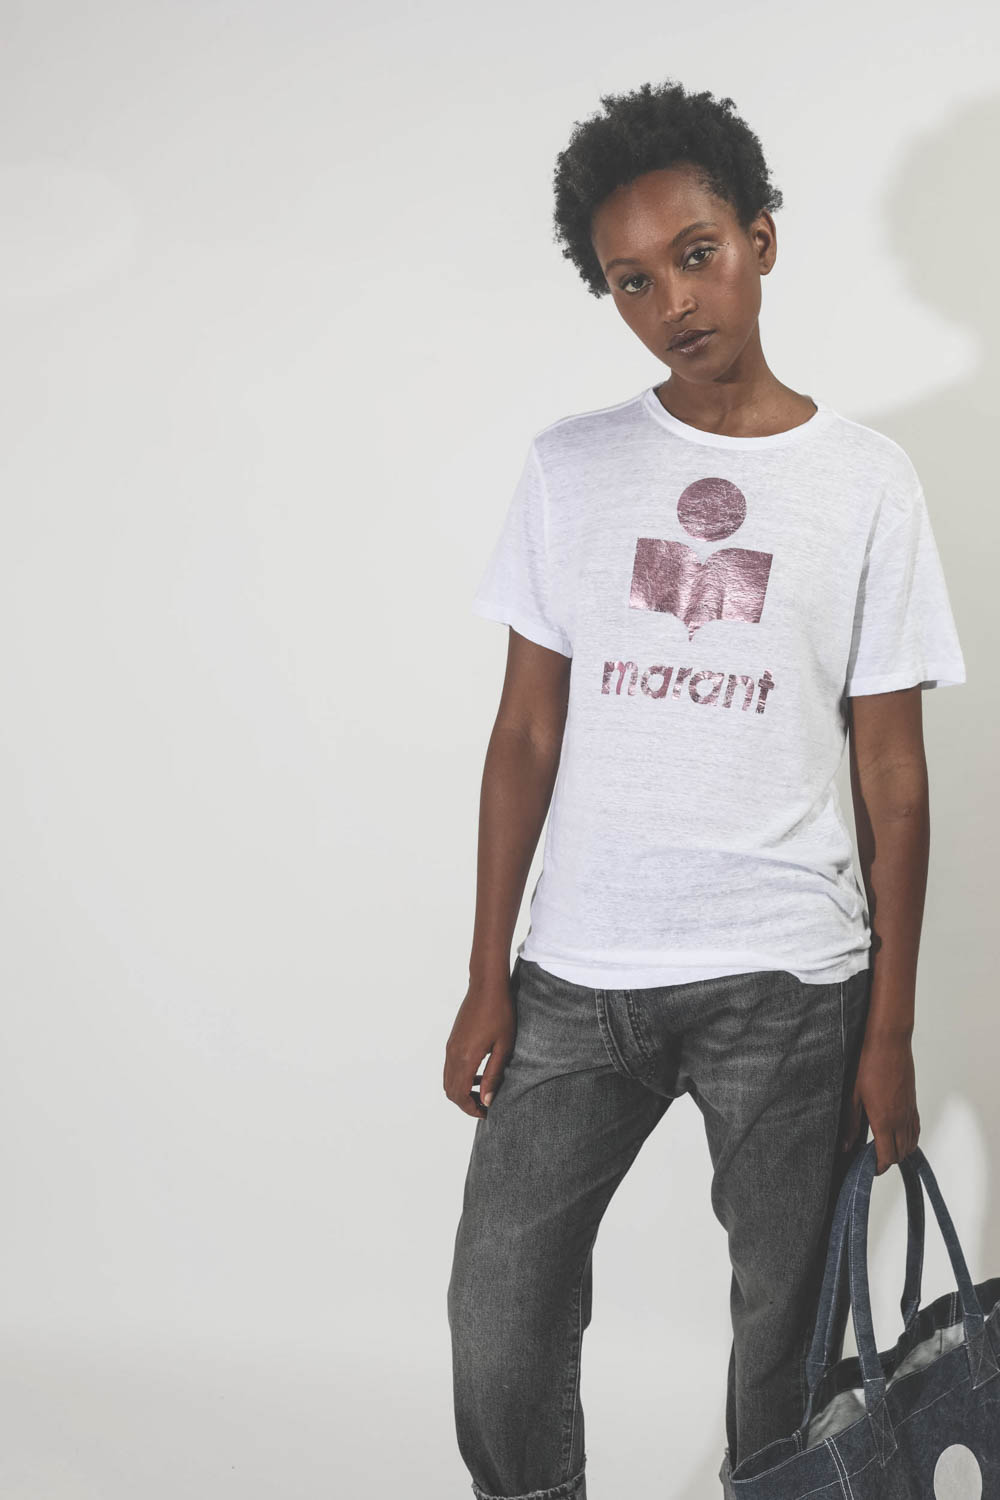 Tee-shirt en lin blanc logo métallisé rose Zewel Isabel Marant Etoile. Porté gros plan. 